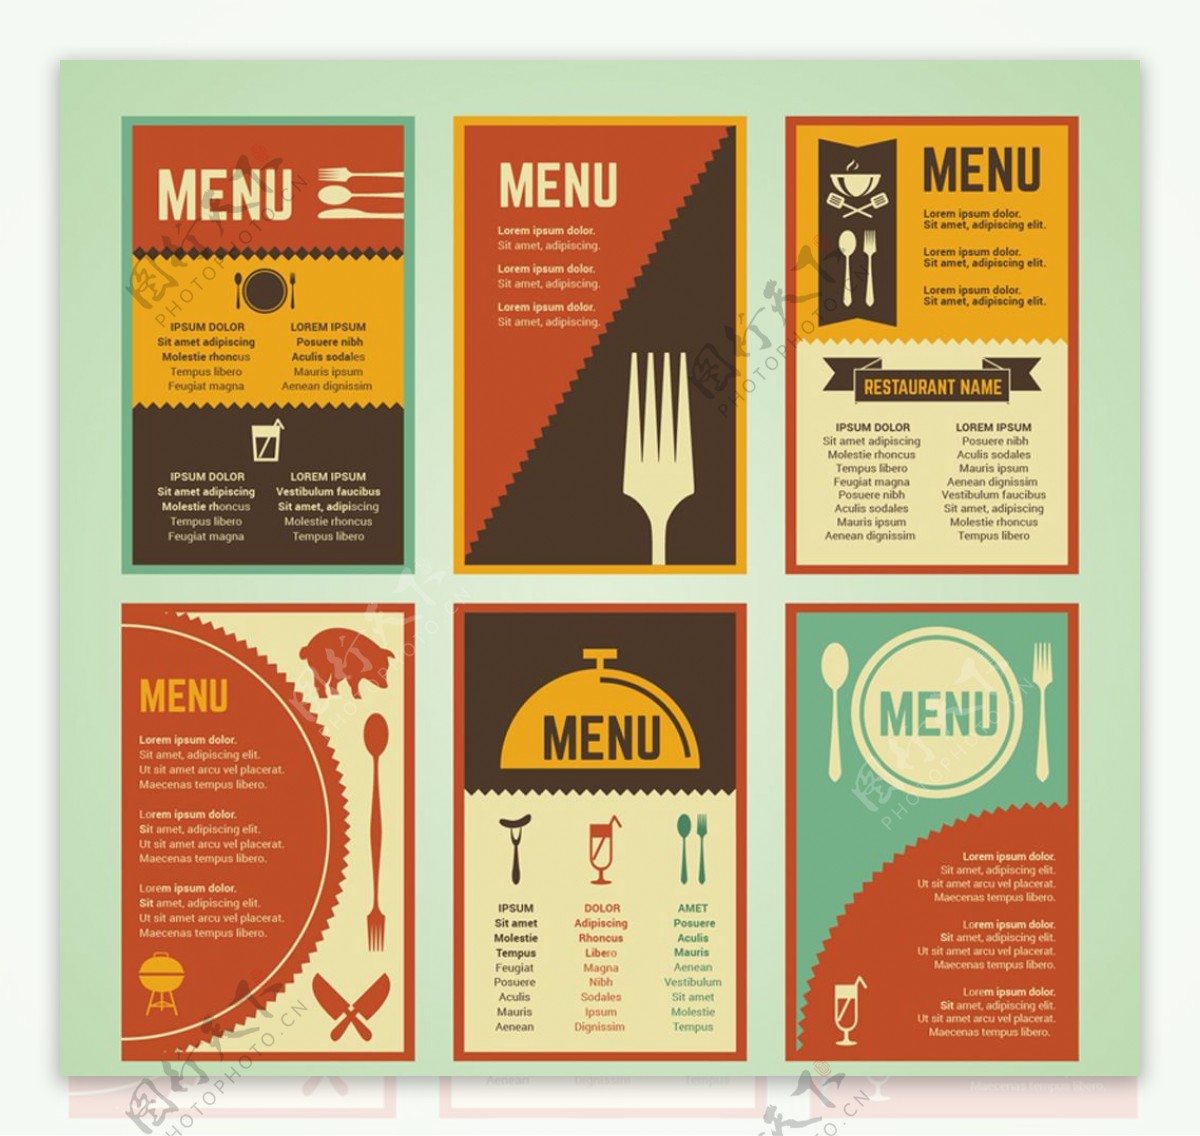 多页色彩餐厅菜单